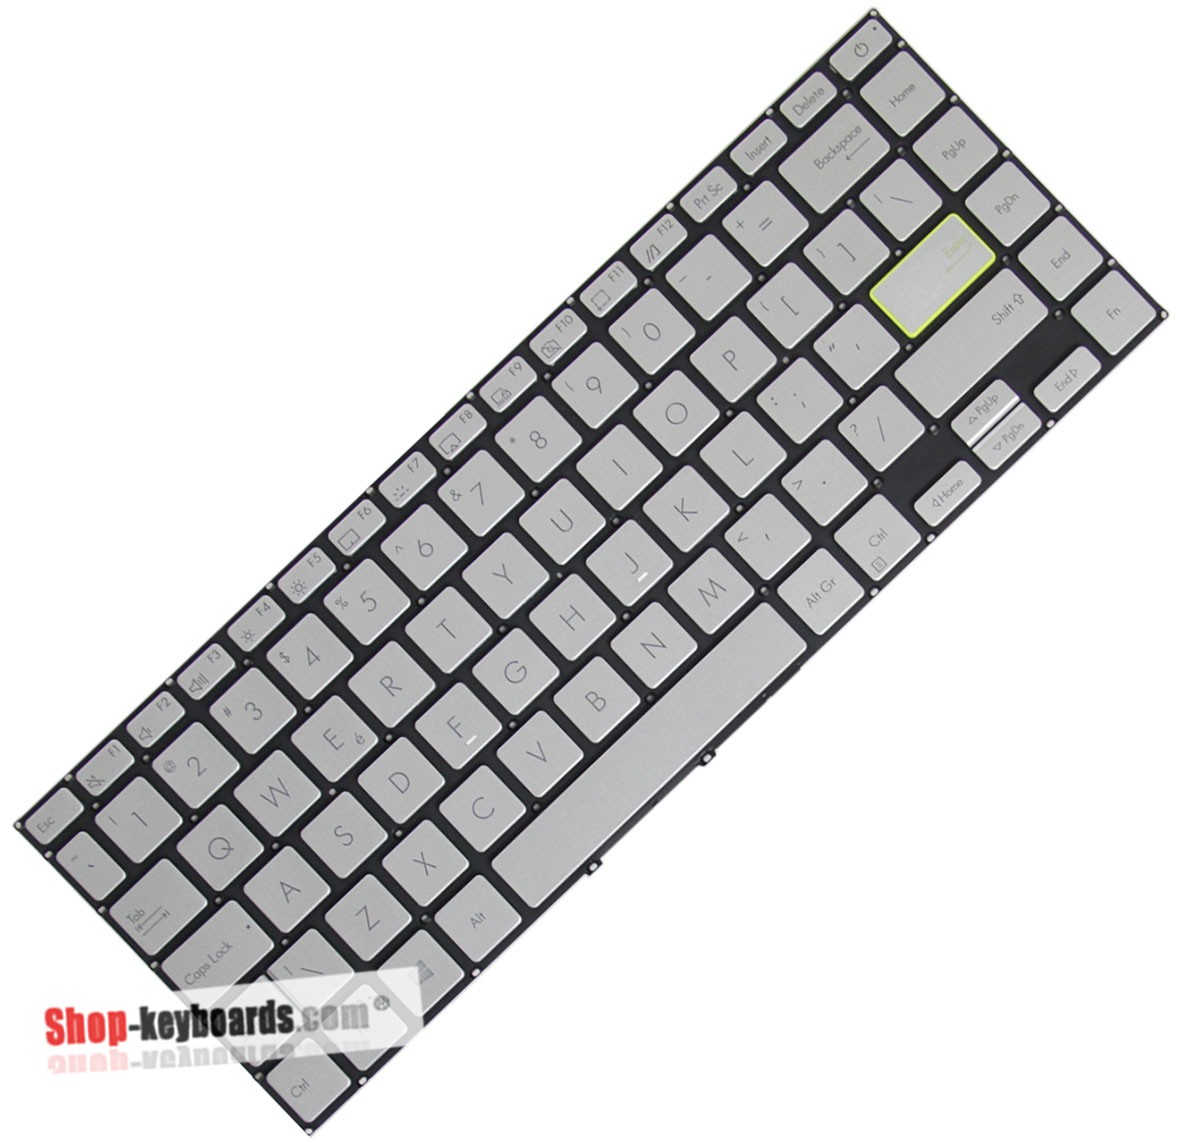 Asus 9Z.NH9BQ.001 Keyboard replacement